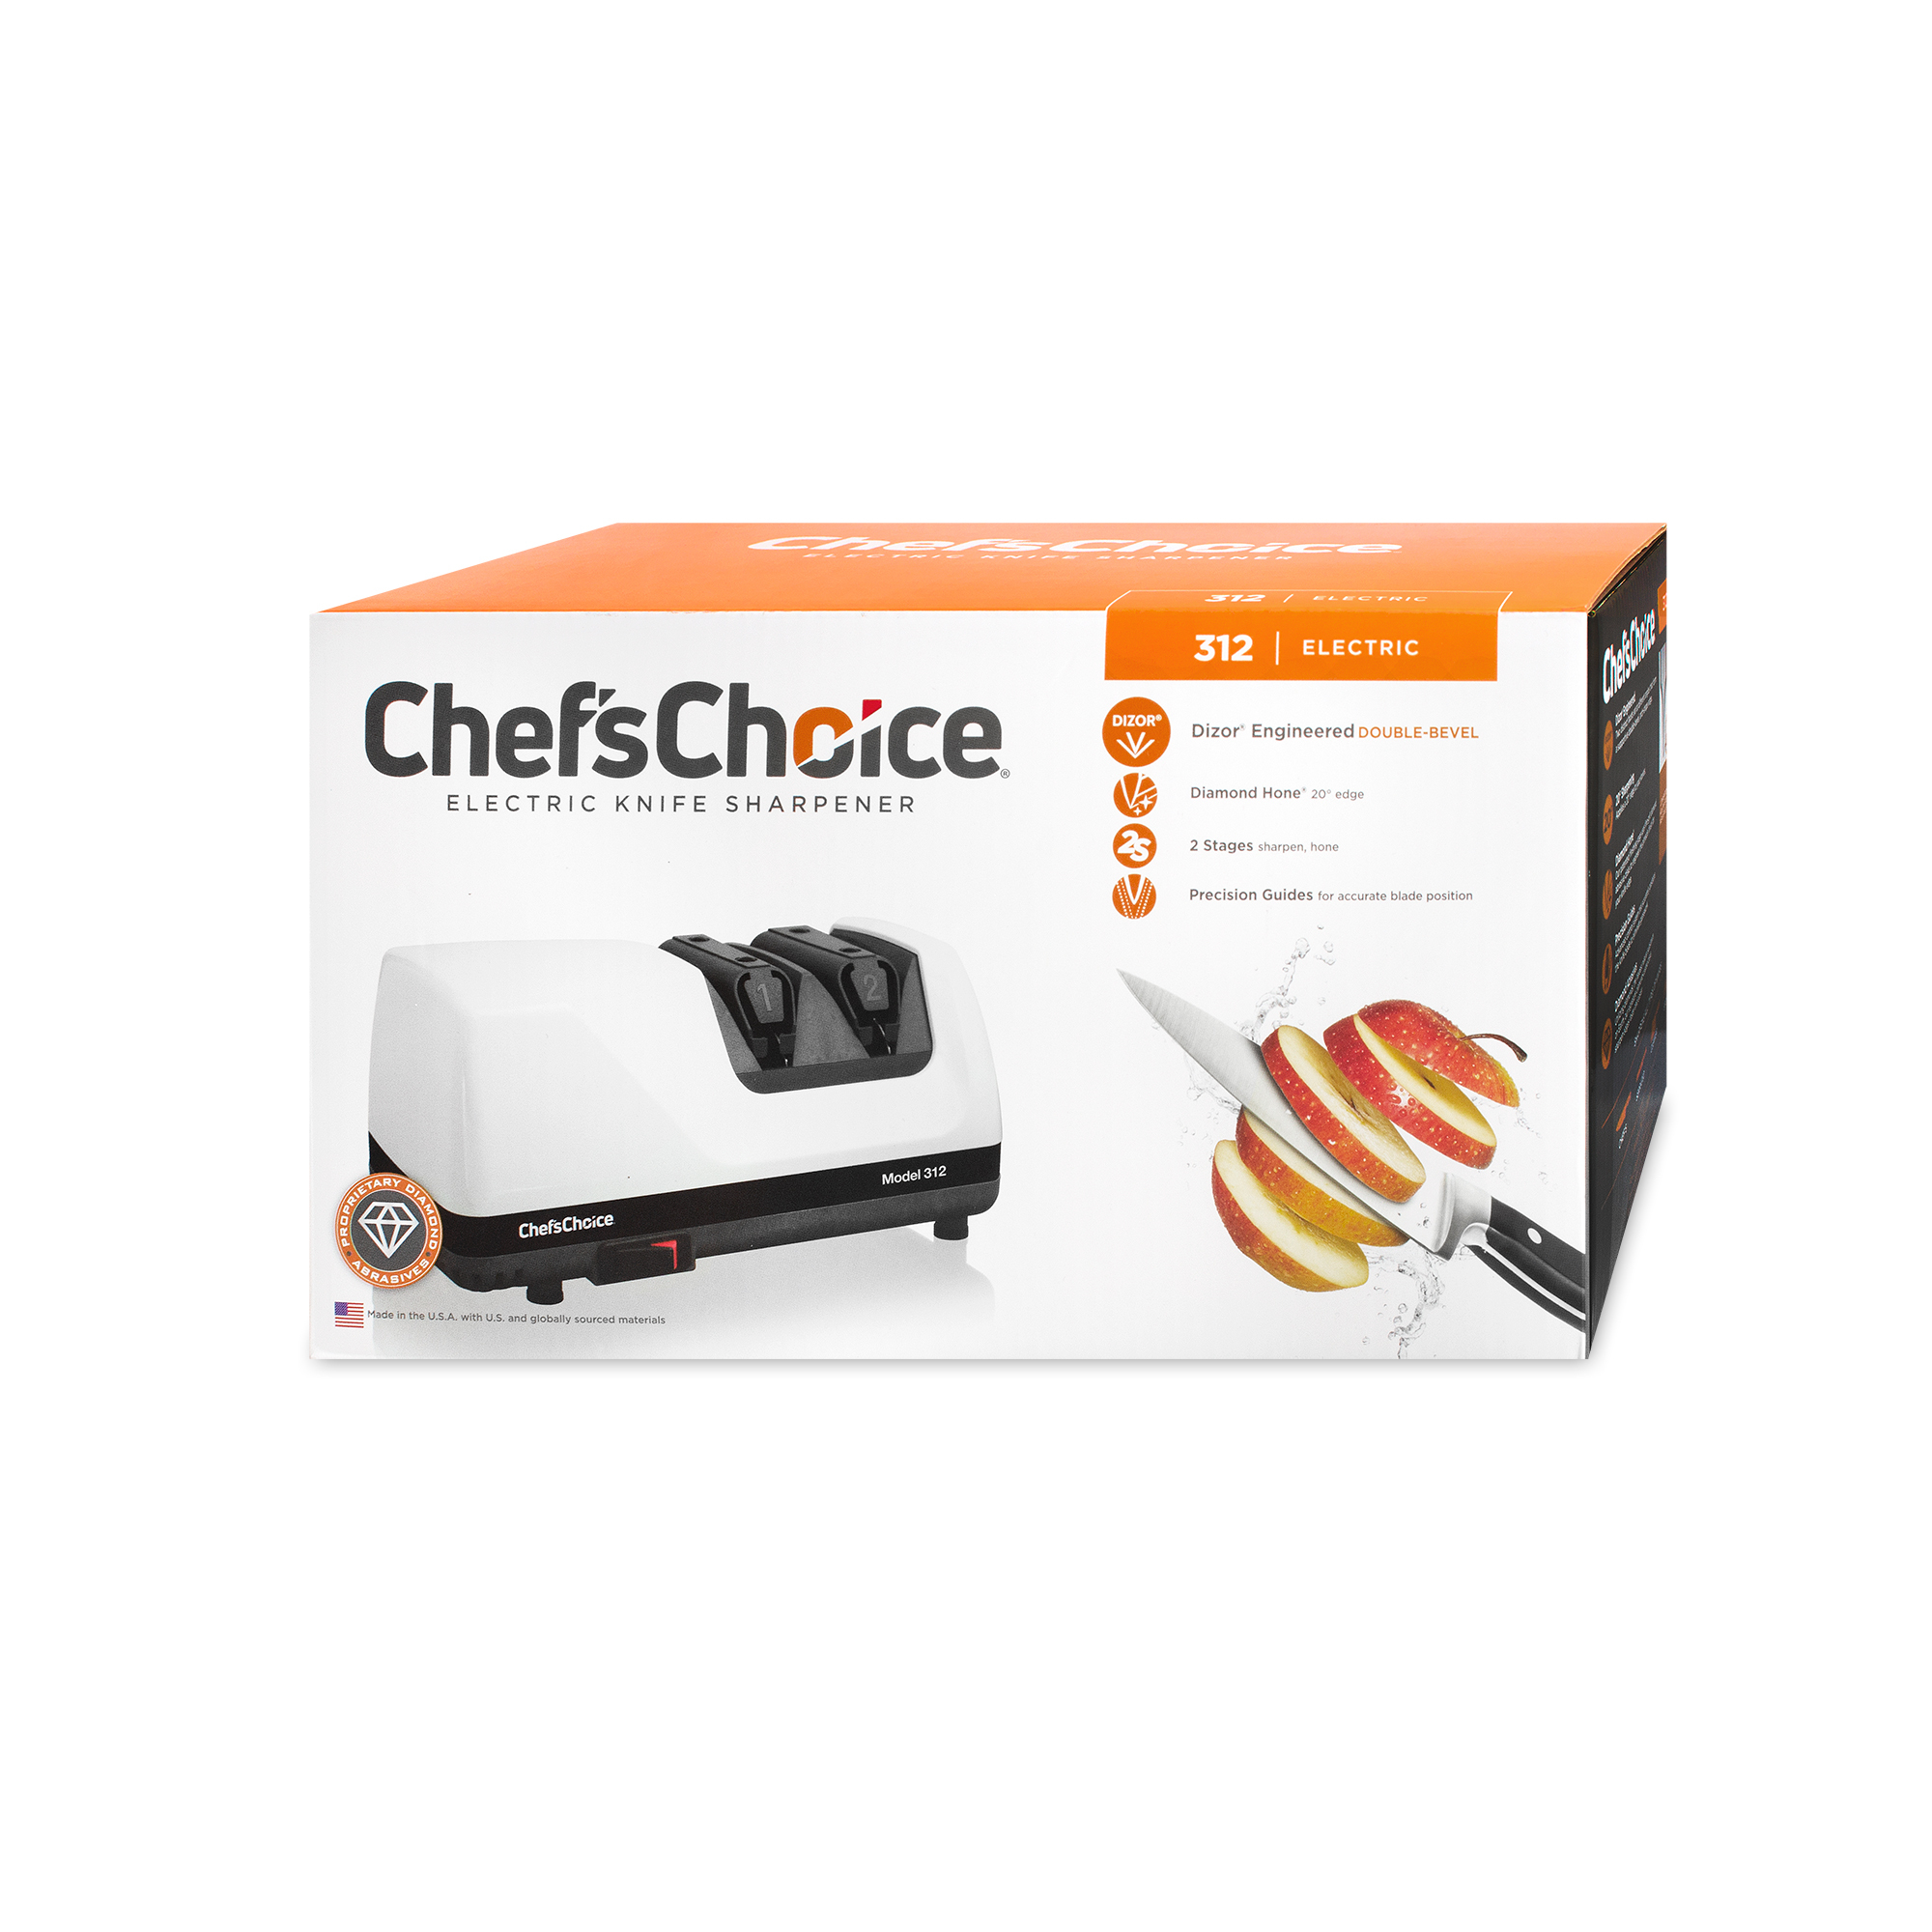 Электрический станок для заточки ножей chef’schoice cc312 | SPORTLE